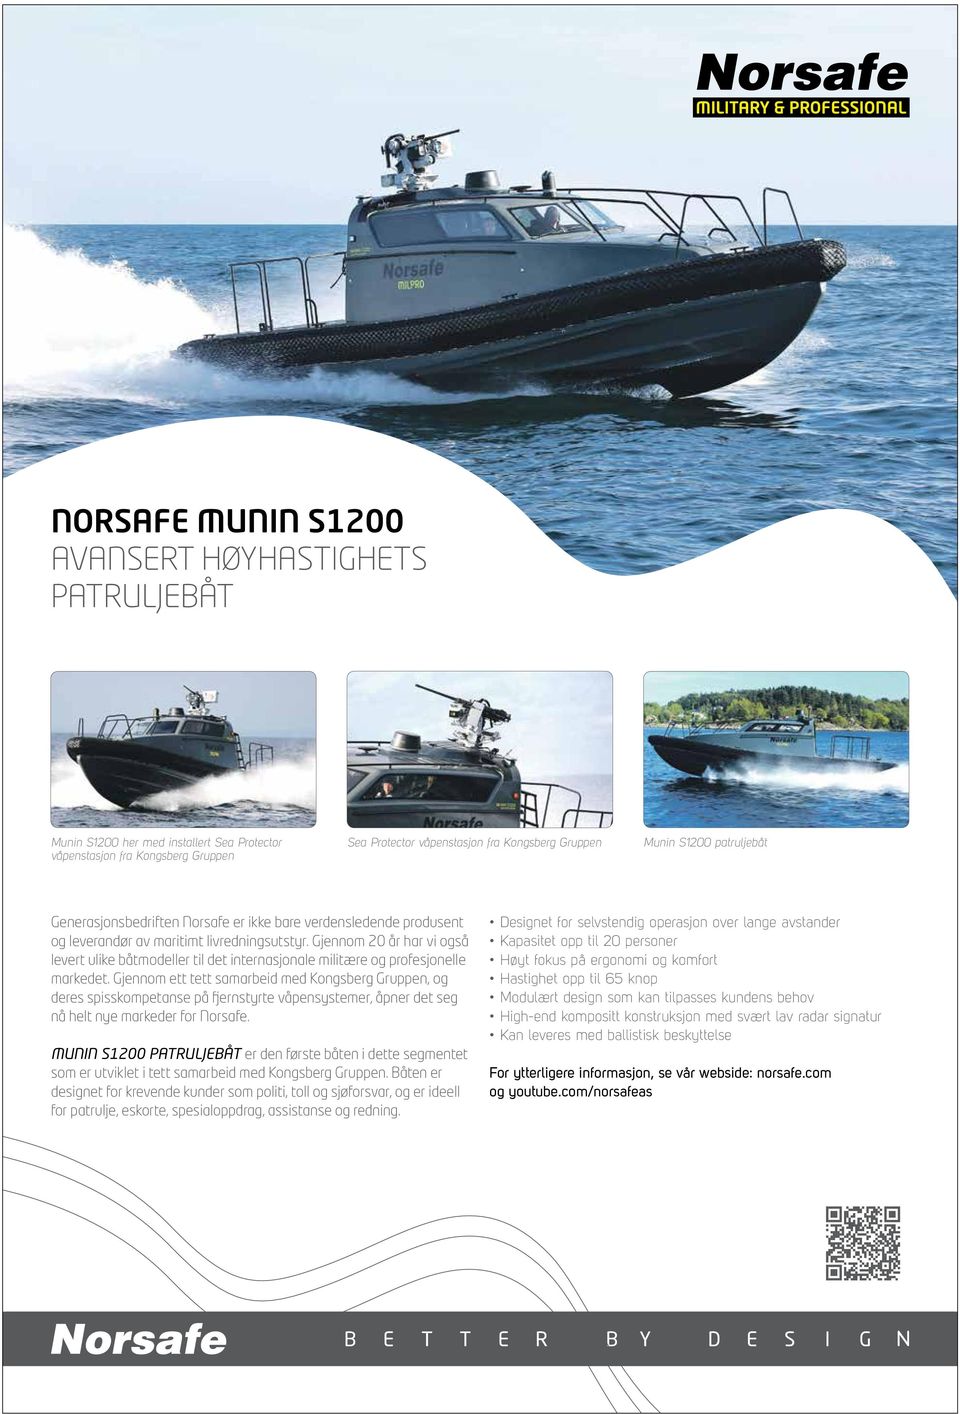 Gjennom 20 år har vi også levert ulike båtmodeller til det internasjonale militære og profesjonelle markedet.